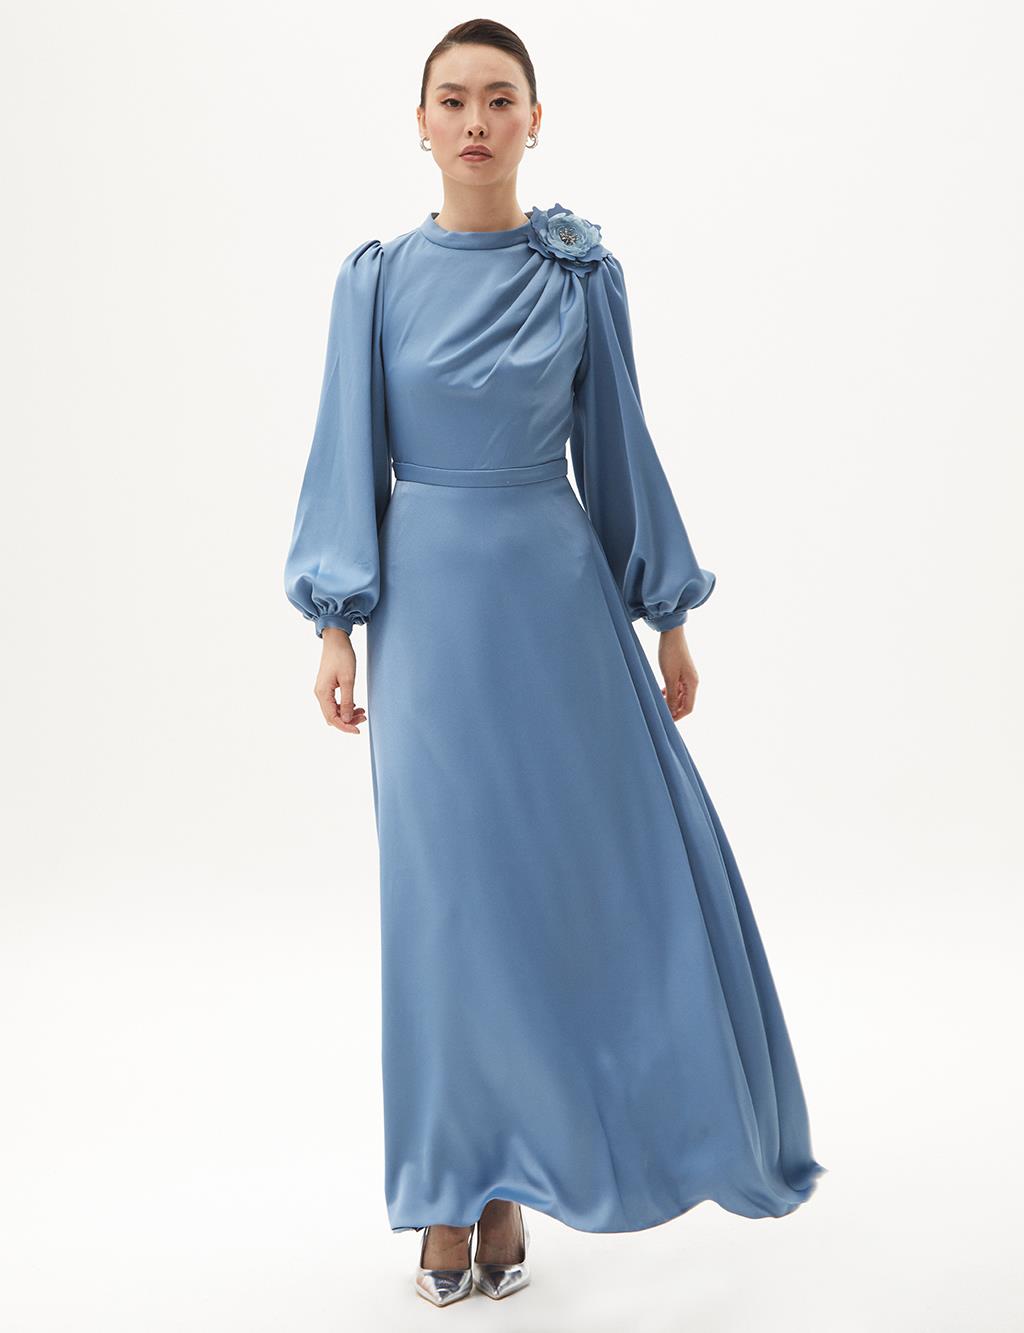 Rose Motif Satin Dress Crown Blue